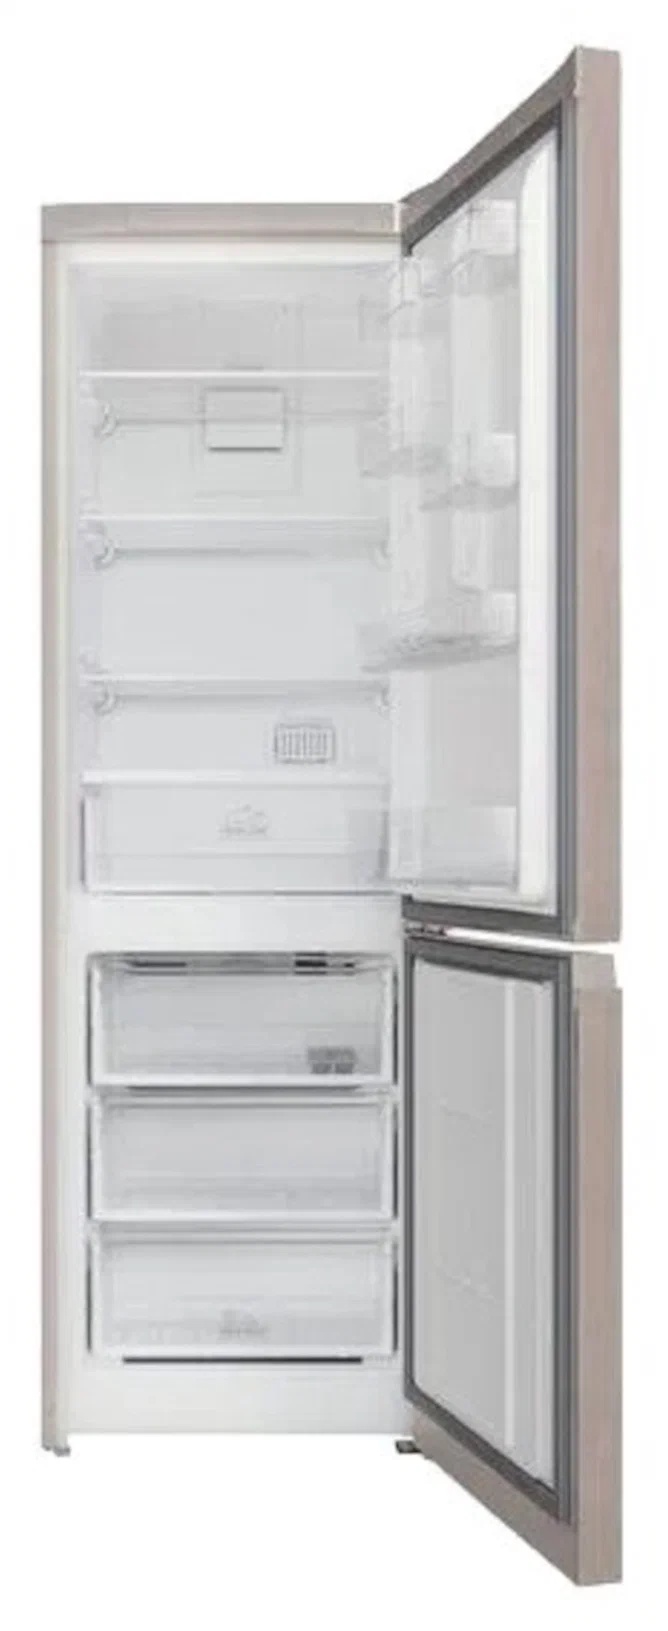 Холодильник-морозильник HOTPOINT/ARISTON арт.HTR 5180M 